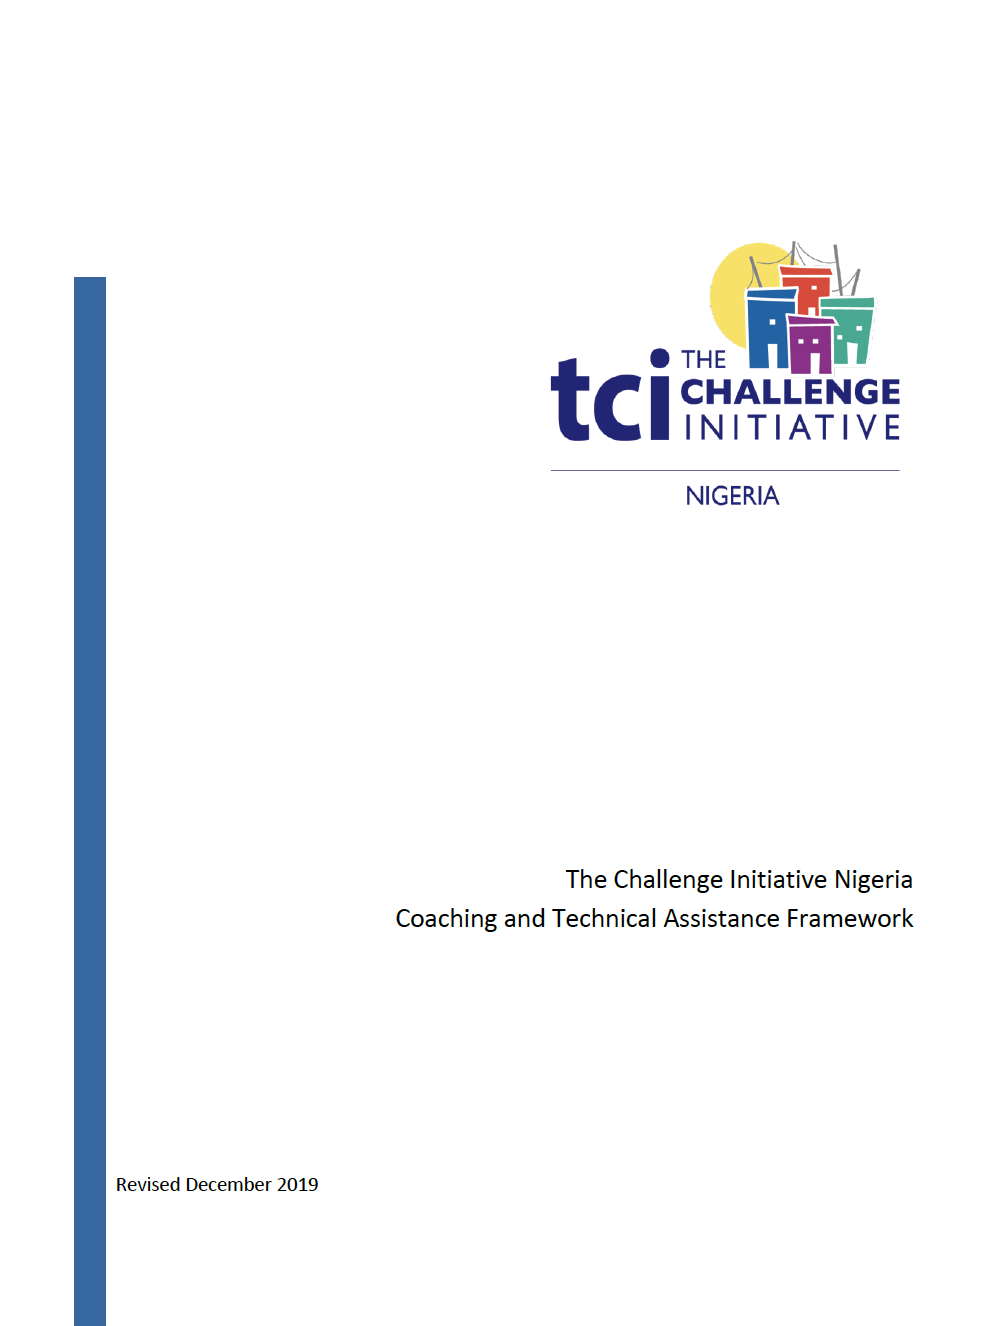 TCI نائجیریا کوچنگ اور تکنیکی معاونت فریم ورک